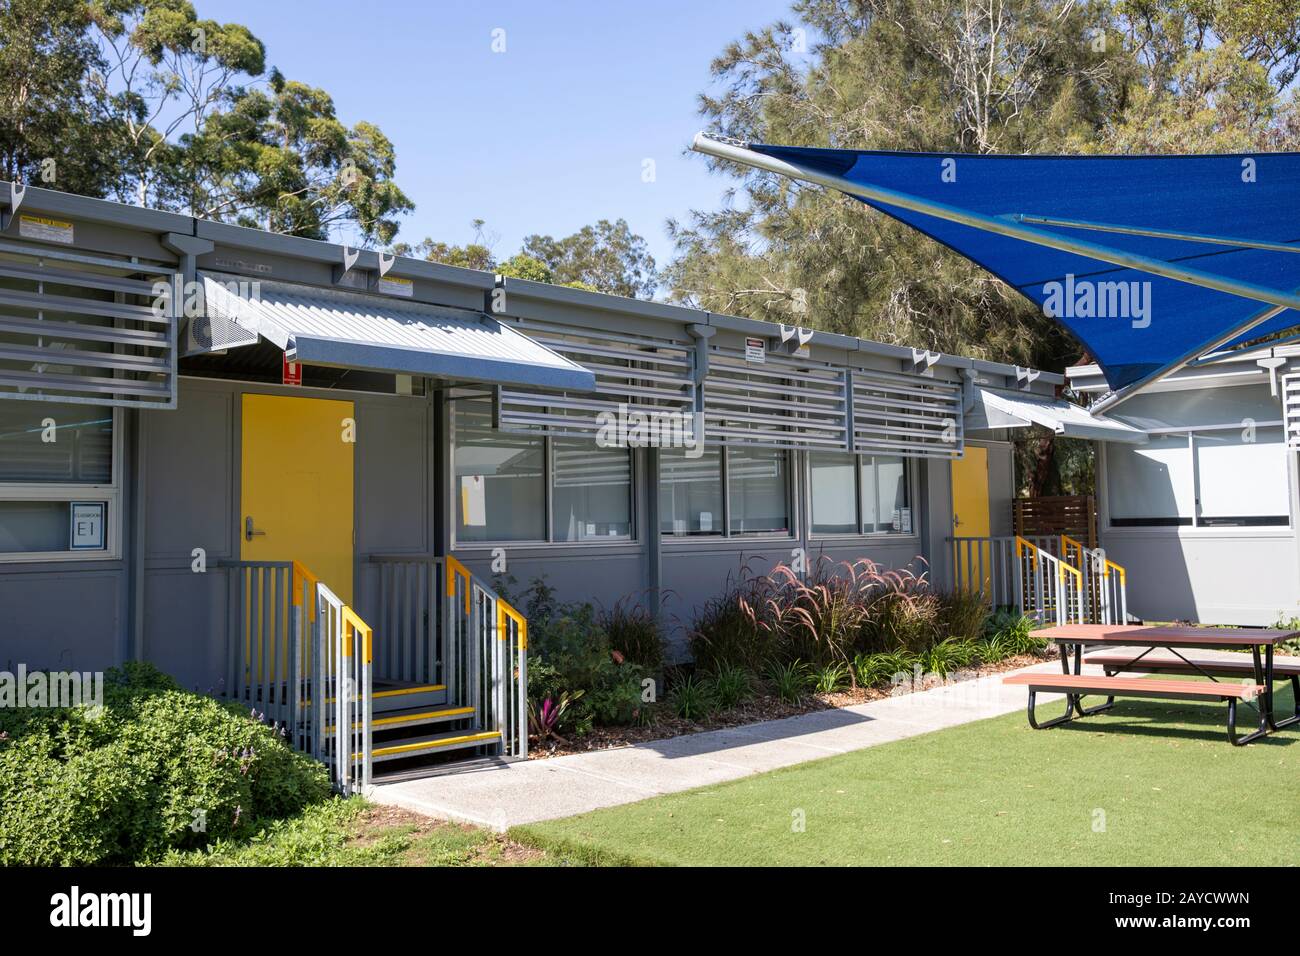 Aule scolastiche smontabili presso una scuola pubblica di Sydney in Australia Foto Stock